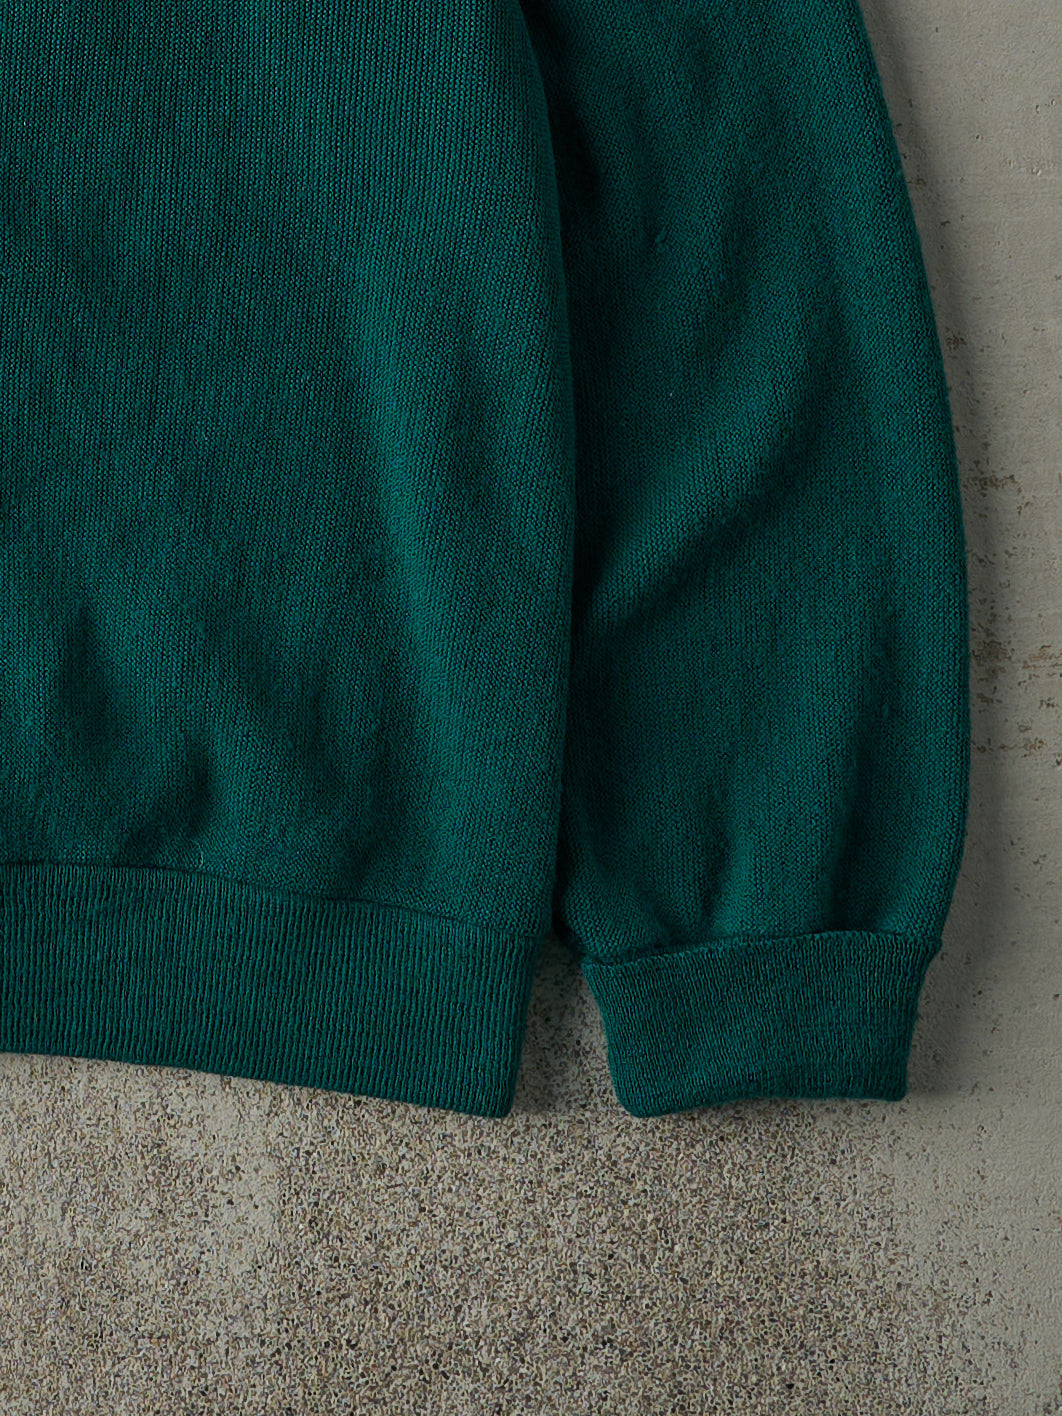 Vintage 80s Green Knit Cardigan (M/L)